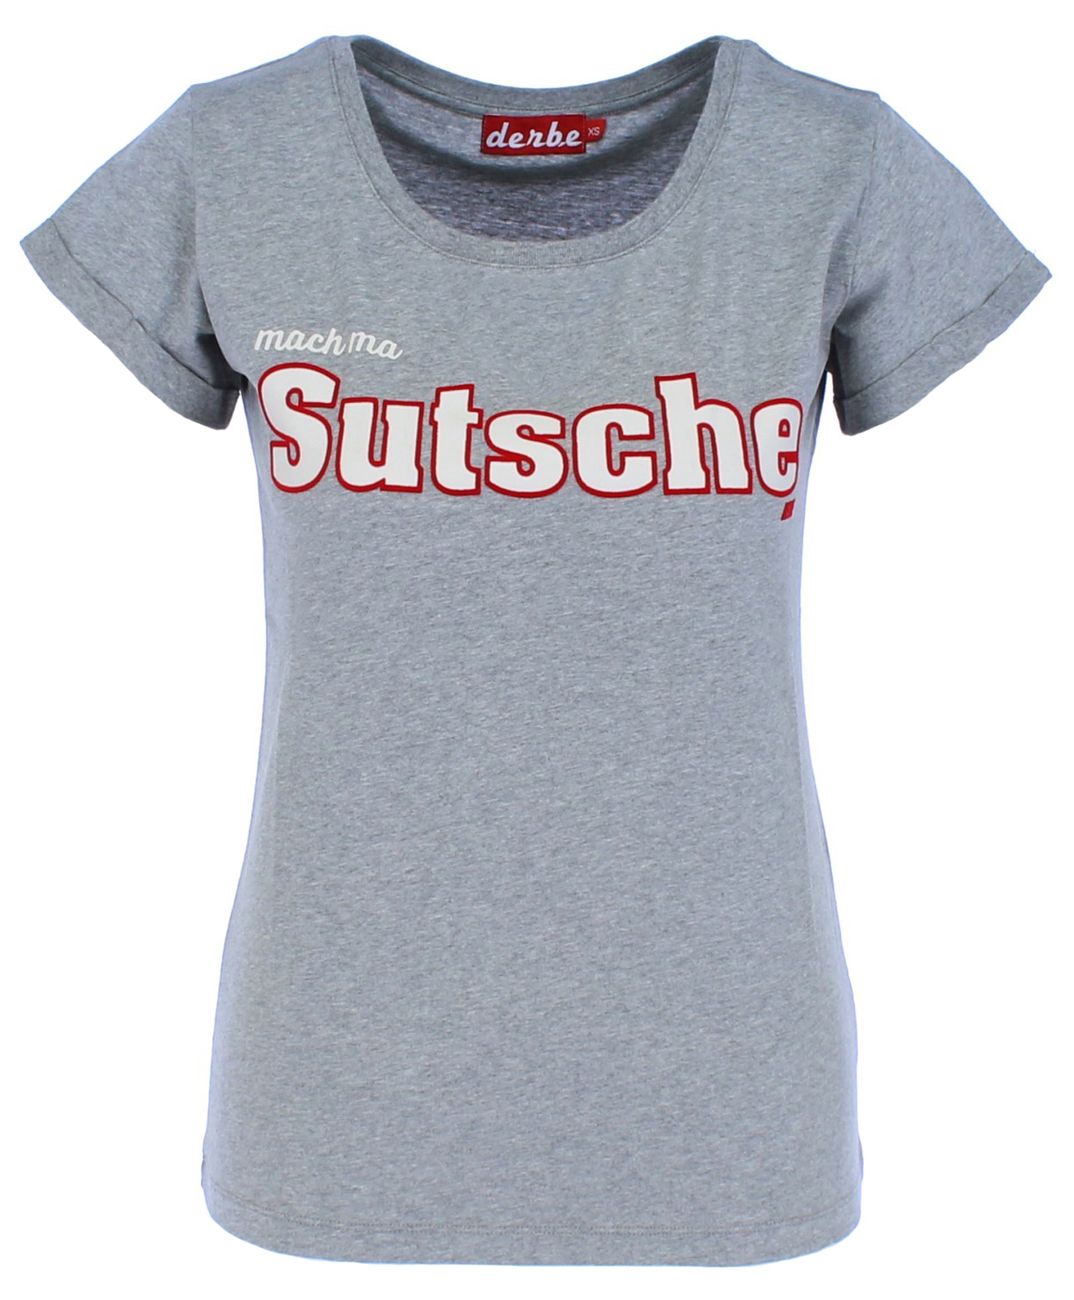 DERBE HAMBURG SUTSCHE GIRLS Damen T-Shirt - Derbe Hamburg - SAGATOO - 4251634717963